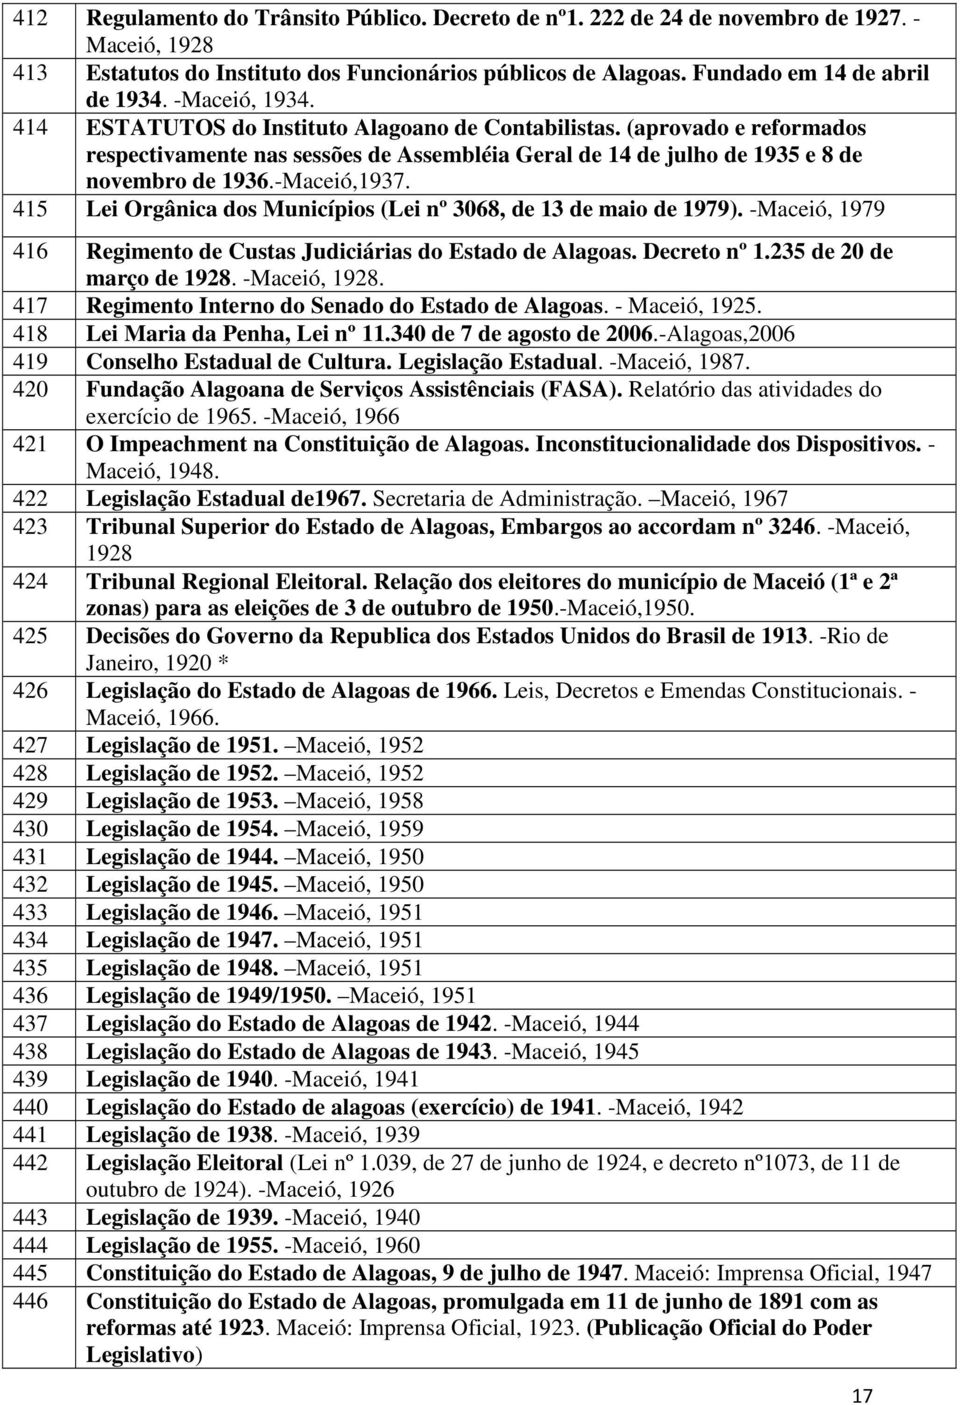 415 Lei Orgânica dos Municípios (Lei nº 3068, de 13 de maio de 1979). -Maceió, 1979 416 Regimento de Custas Judiciárias do Estado de Alagoas. Decreto nº 1.235 de 20 de março de 1928. -Maceió, 1928.